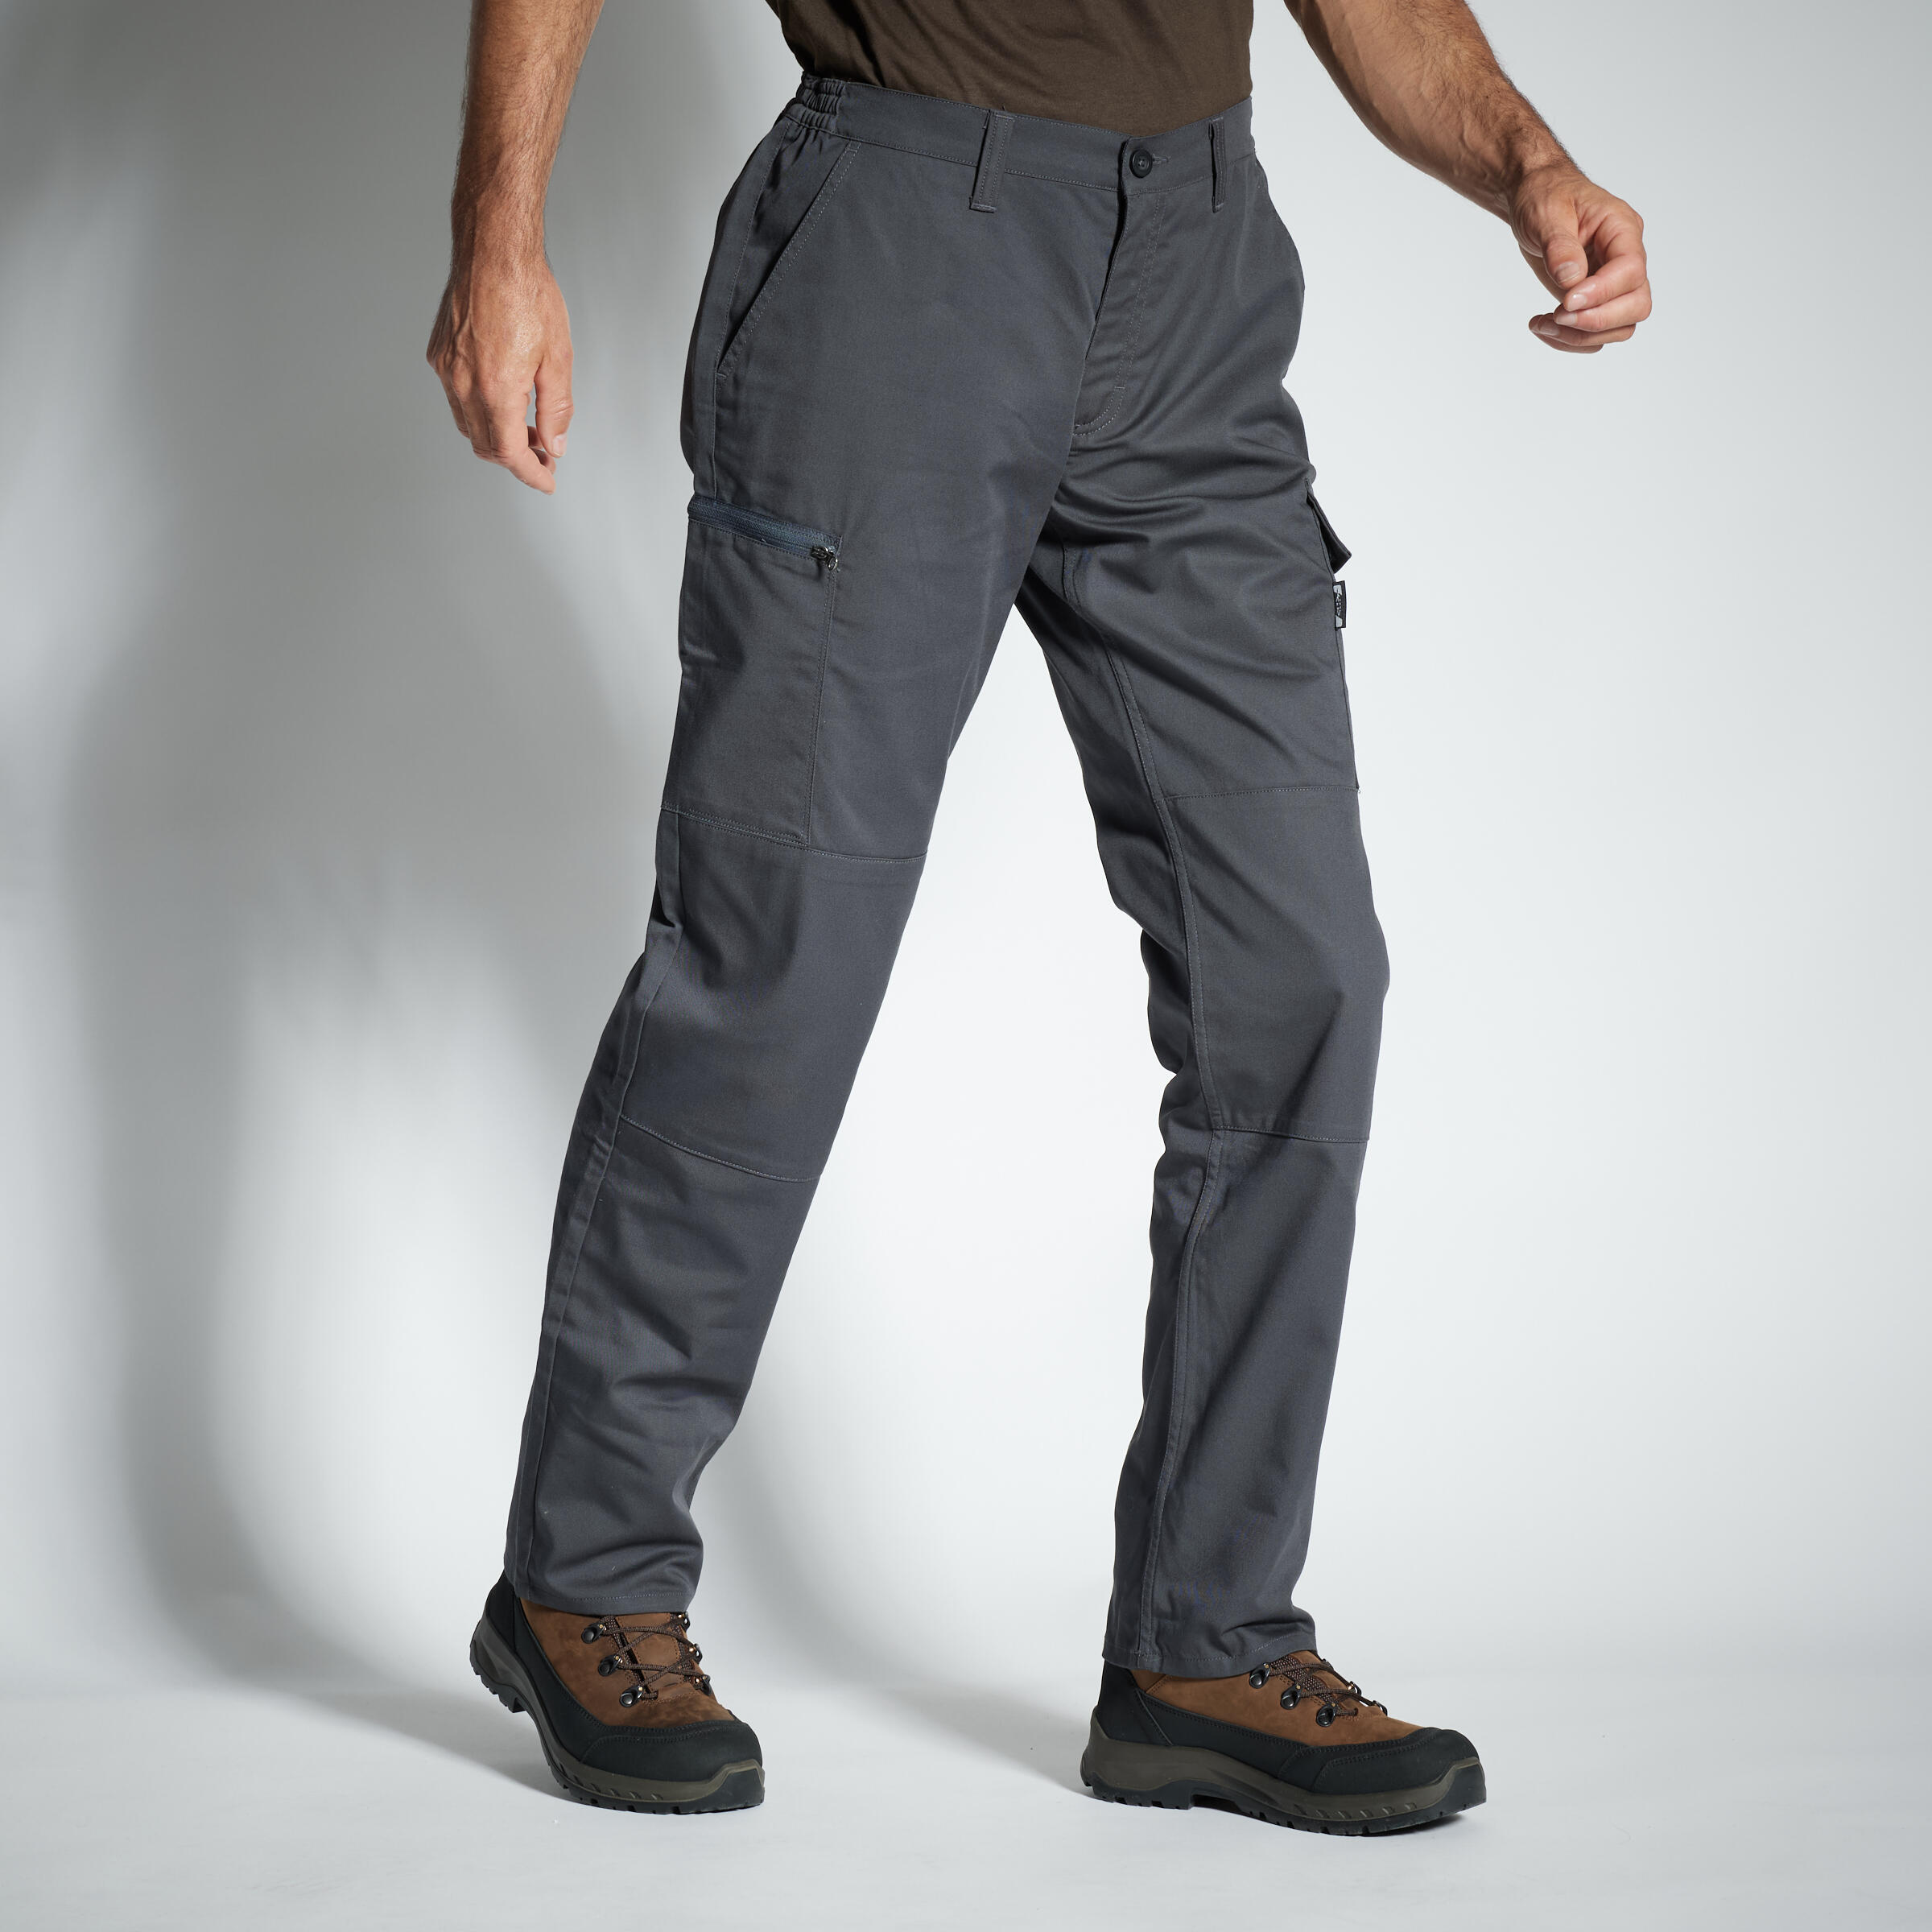 pantalon cargo resistant steppe 300 gris - solognac